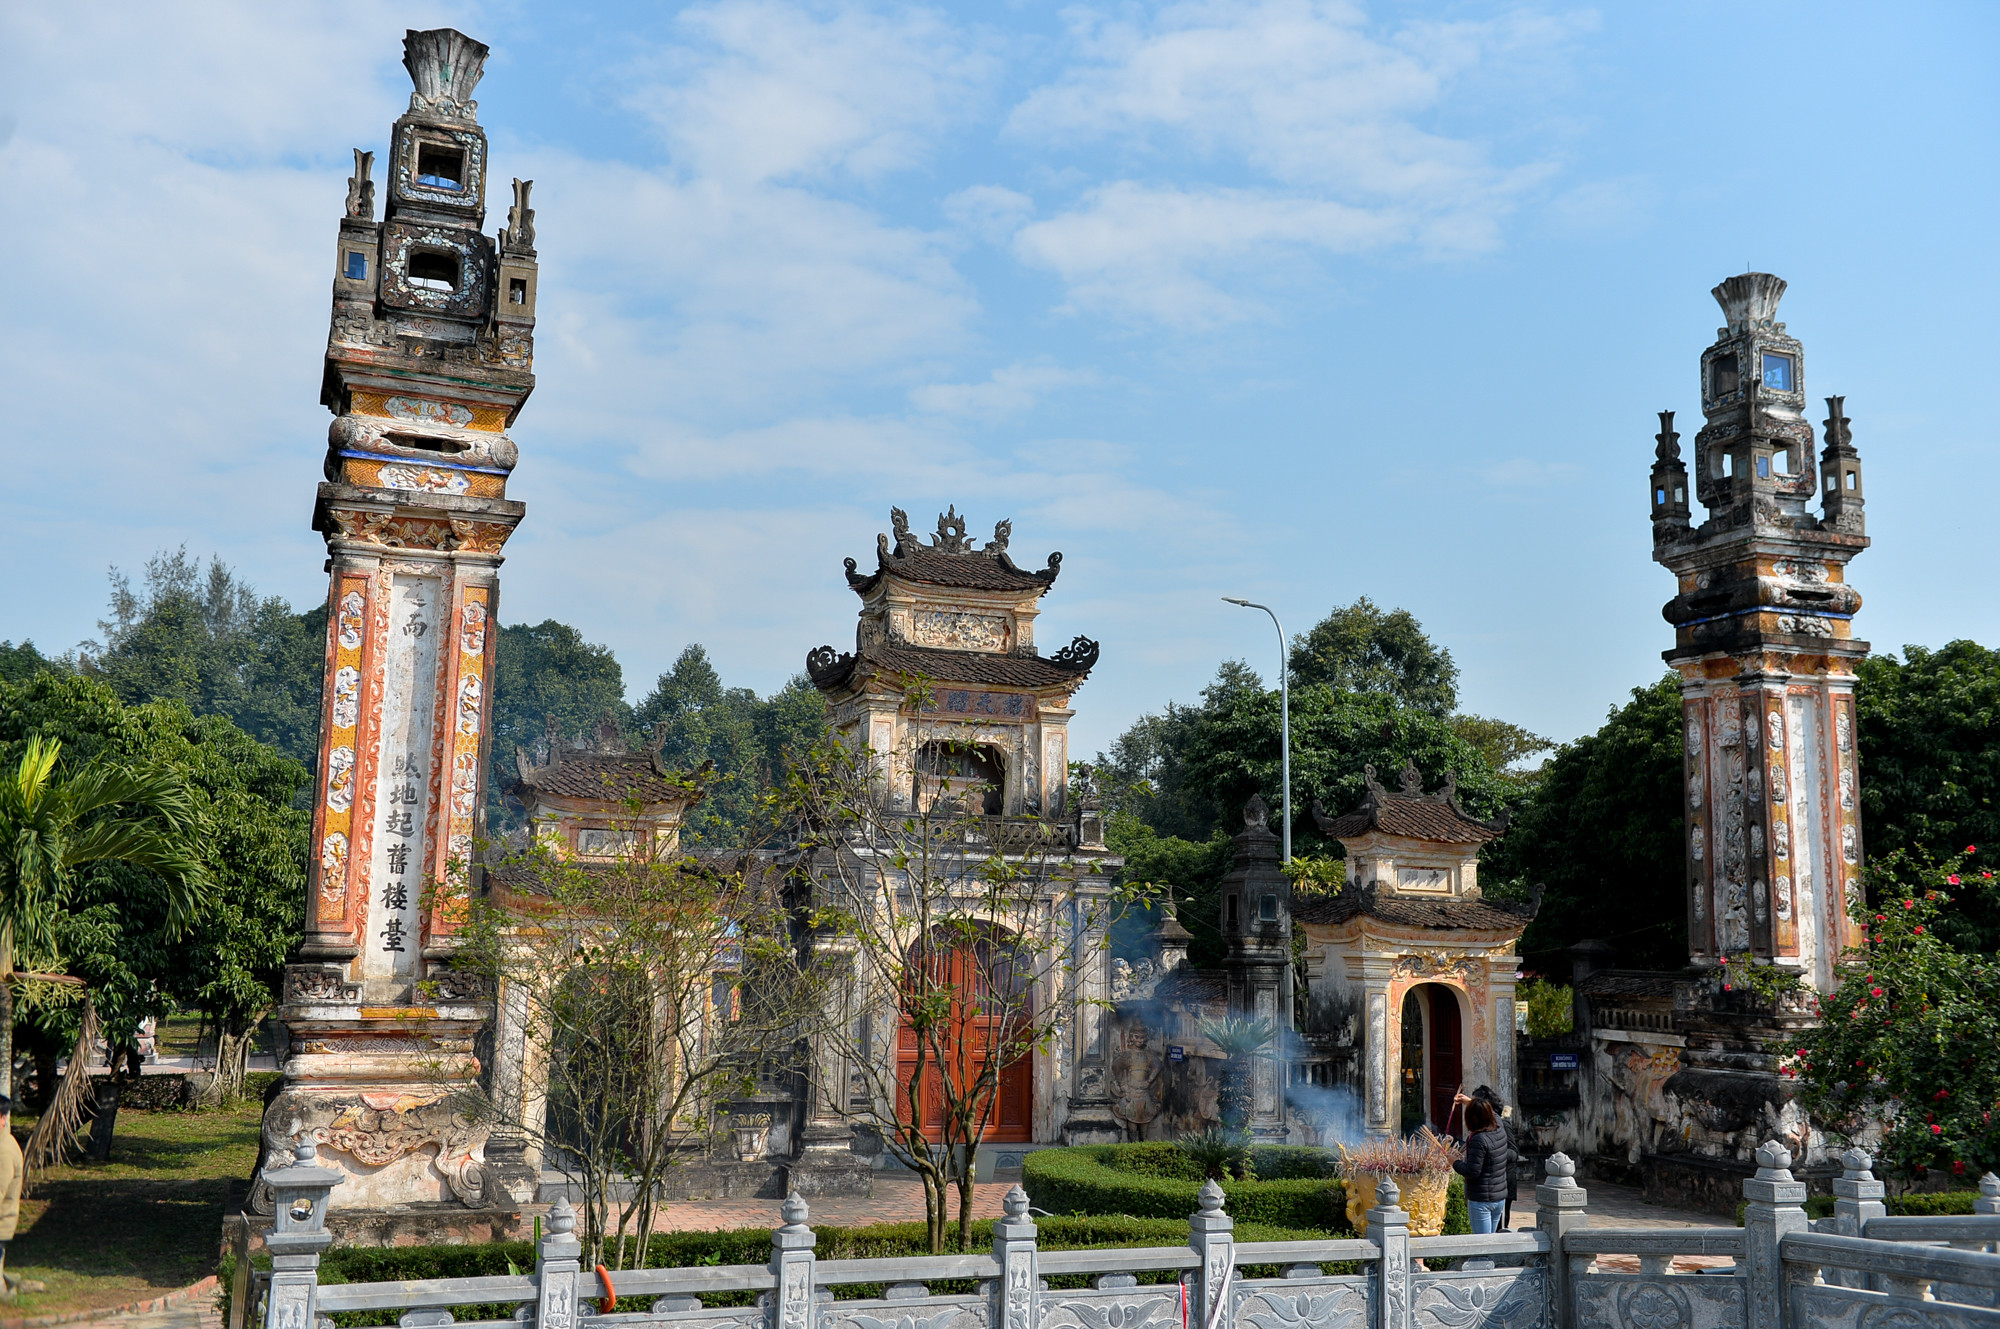 Dù trải qua nhiều biến cố, thăng trầm của lịch sử, Đền thờ Thái sư Cương quốc công Nguyễn Xí vẫn uy nghi, giữ được nét kiến trúc, văn hóa, nghệ thuật truyền thống của dân tộc. Ảnh: Thành Cường